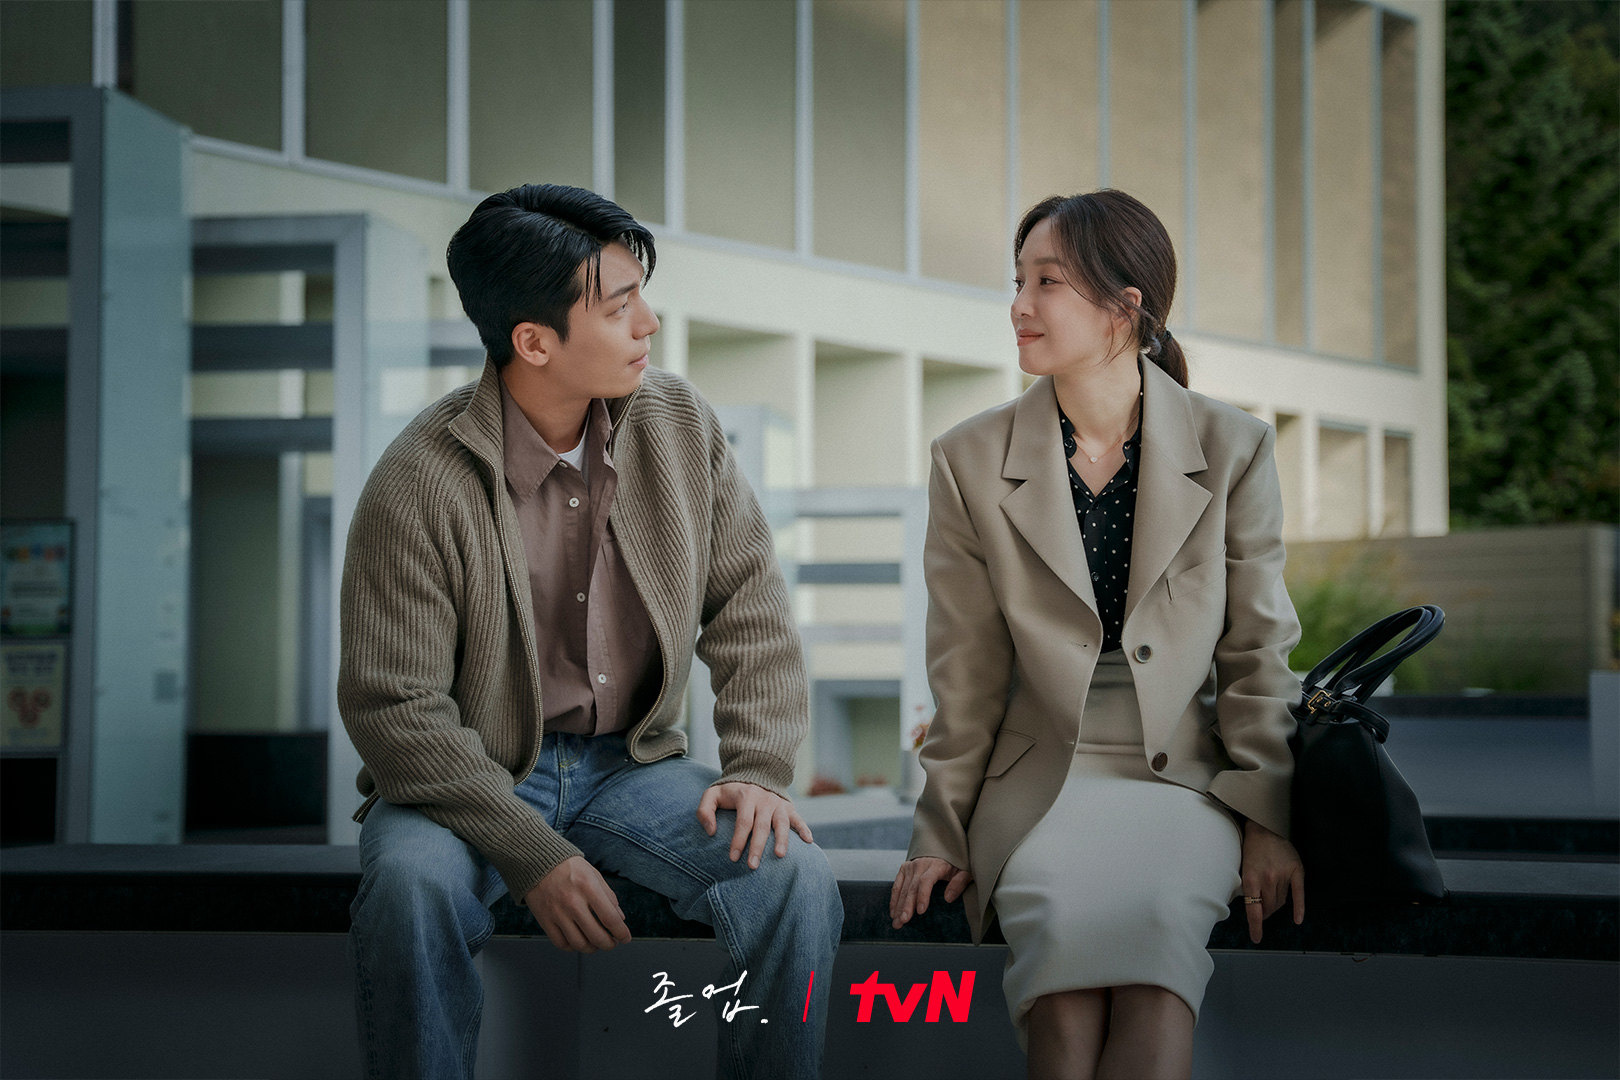 Đứa con tinh thần của đạo diễn An Pan Seok khắc họa chuyện tình ngọt ngào giữa nữ giảng viên Seo Hye Jin (Jung Ryeo Won) và Lee Joon Ho (Wi Ha Joon), chàng trai từng là học trò của Seo Hye Jin. Chuyện tình lãng mạn ở Hagwon bắt đầu chiếu từ 11.5